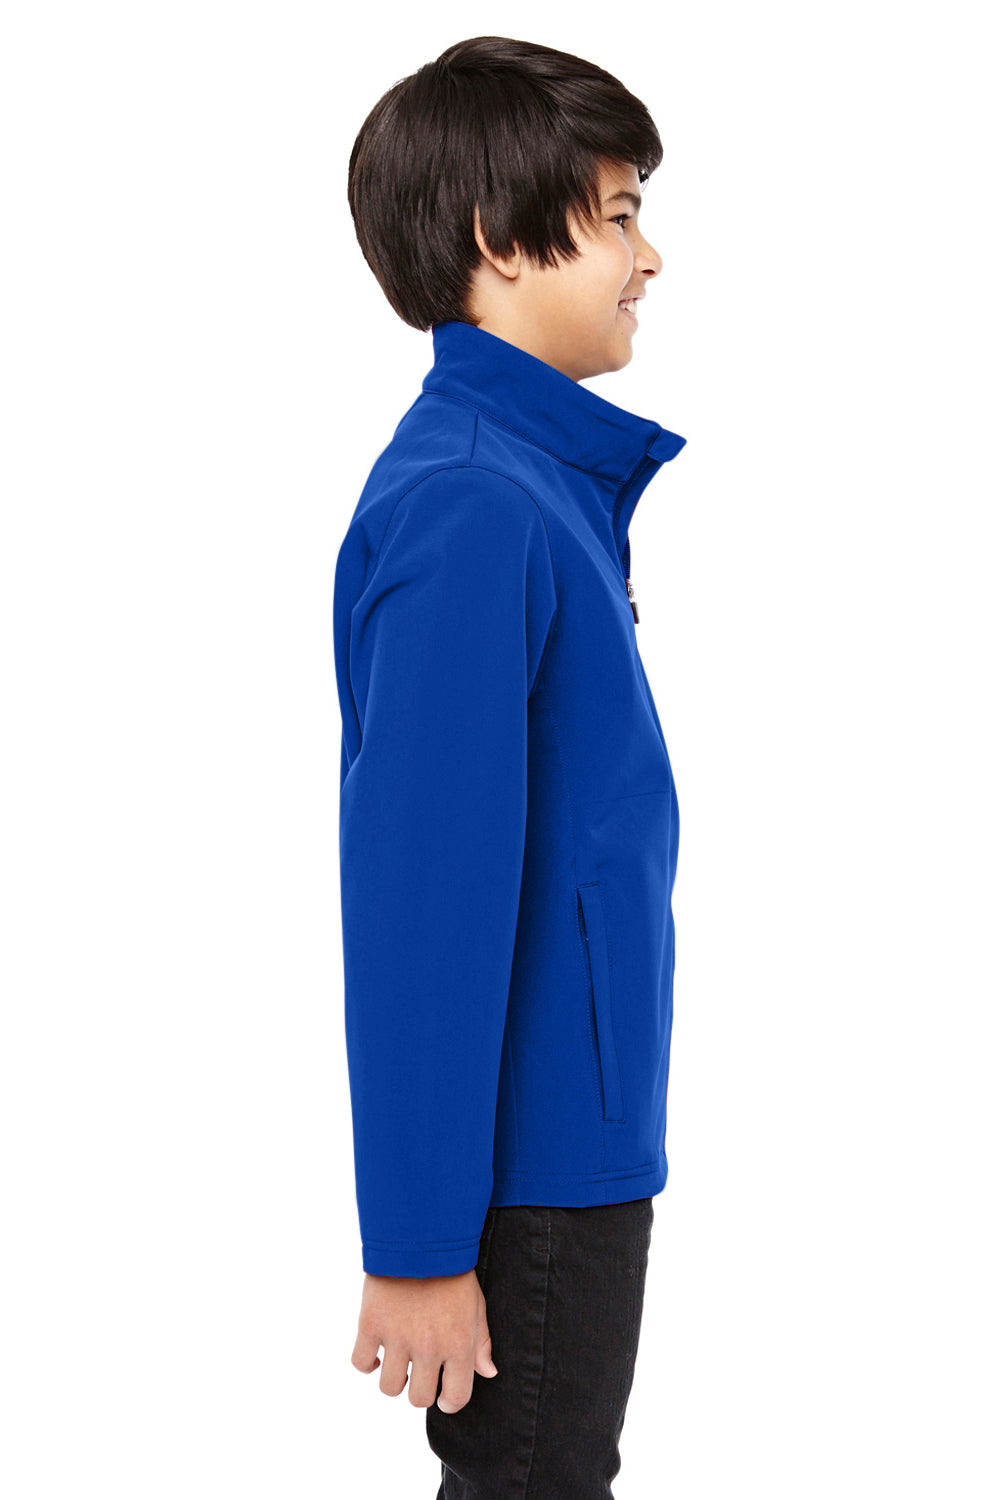 Team 365 TT80Y Youth Leader Waterproof Full Zip Jacket Royal Blue Side